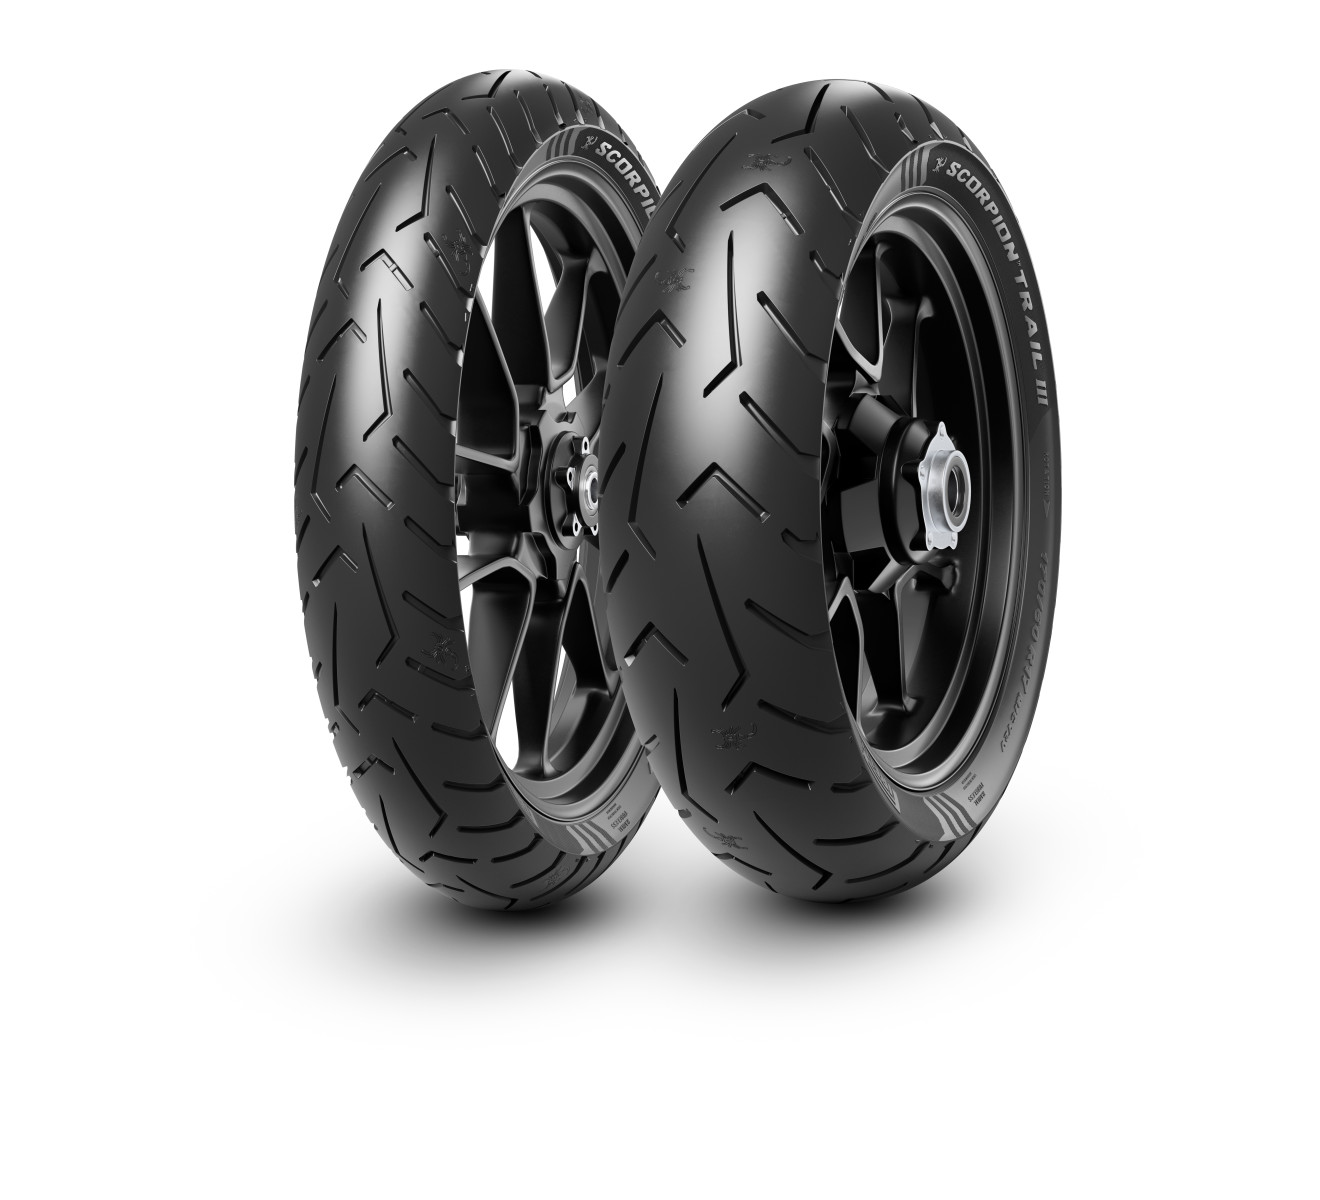 Gomme Nuove Pirelli 150/70 R18 70W Scorpiontrailiii pneumatici nuovi Estivo